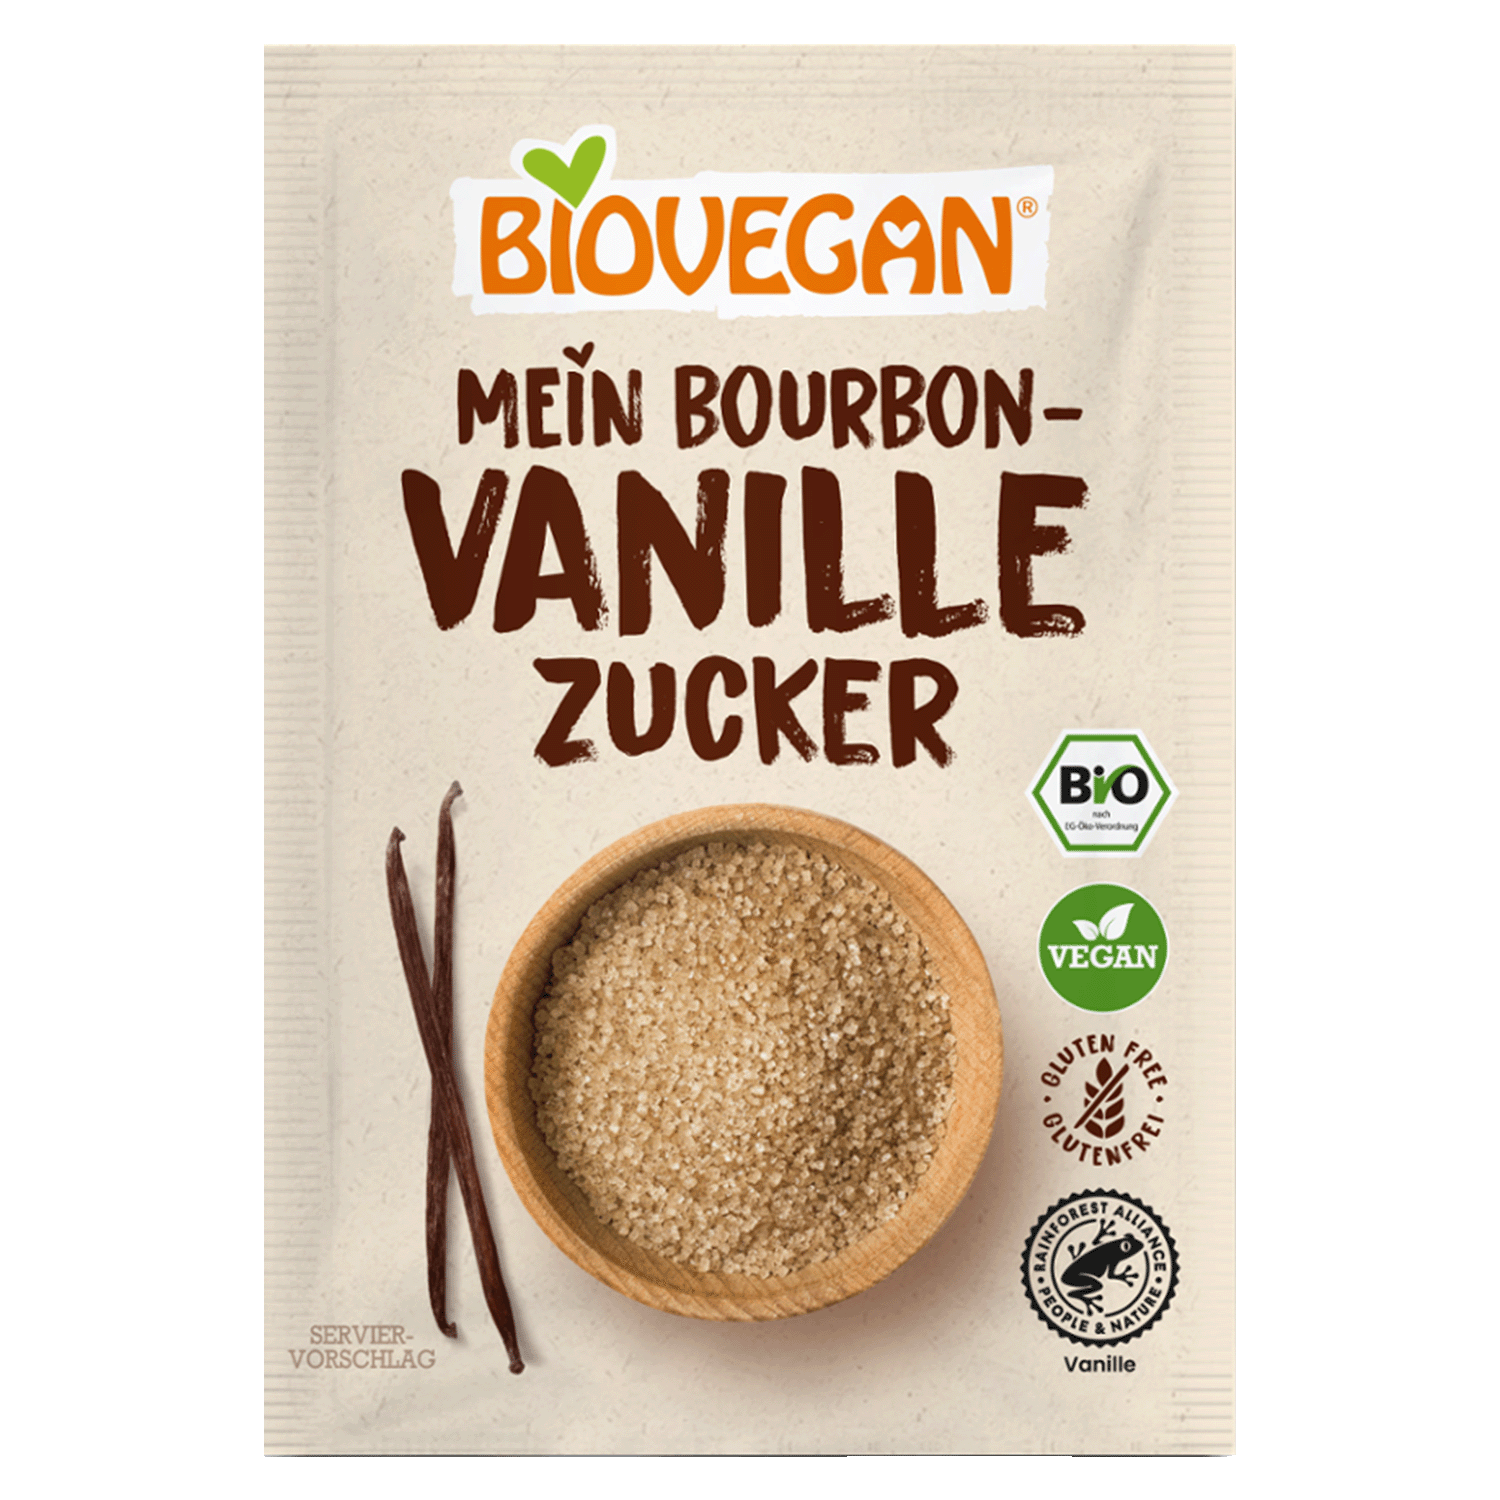 Vanillezucker mit Bourbon-Vanille, BIO, 32g